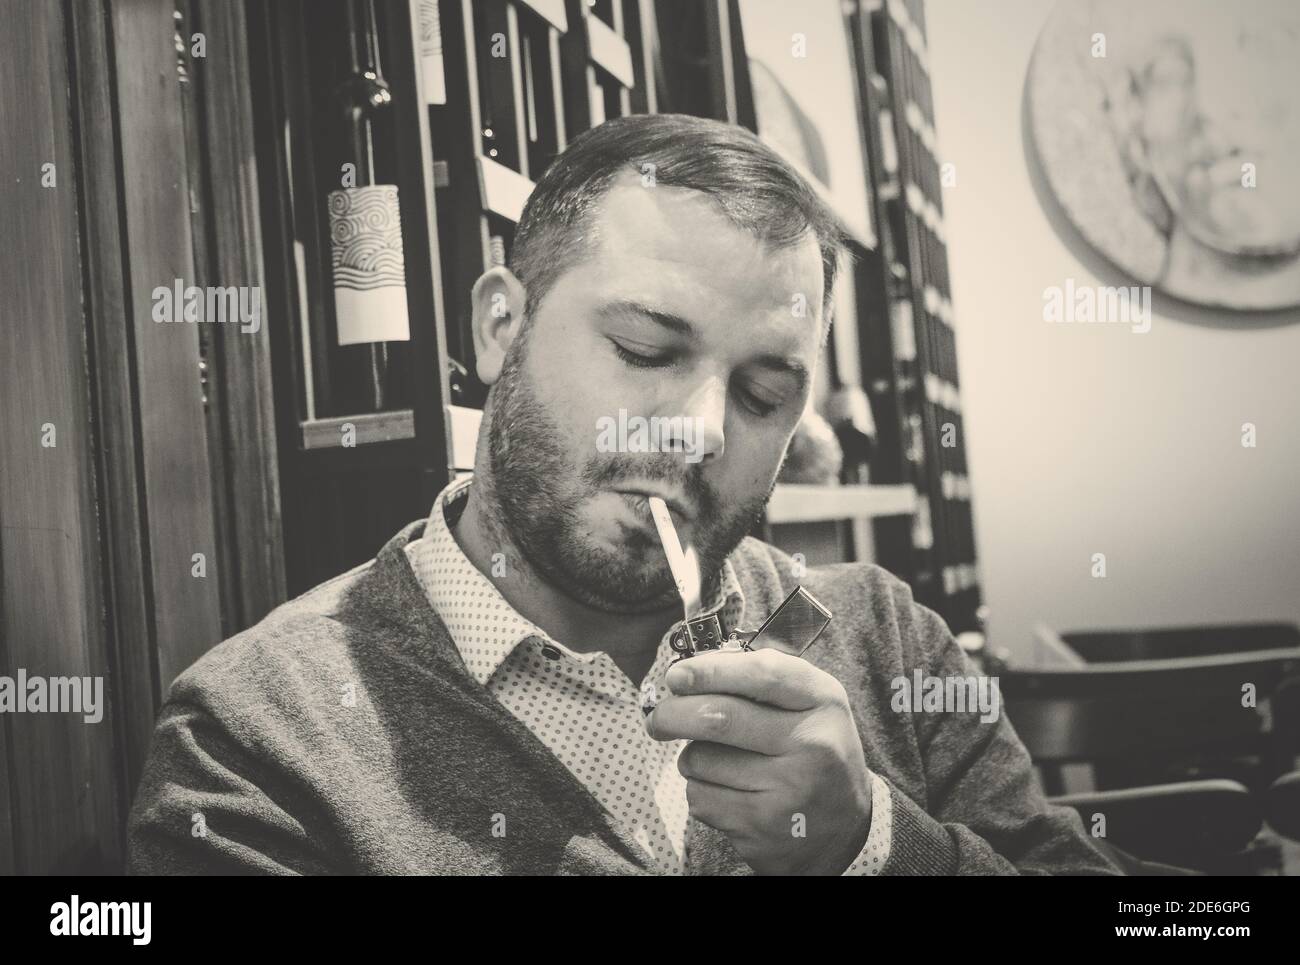 Portrait noir et blanc d'un homme qui allume une cigarette Banque D'Images